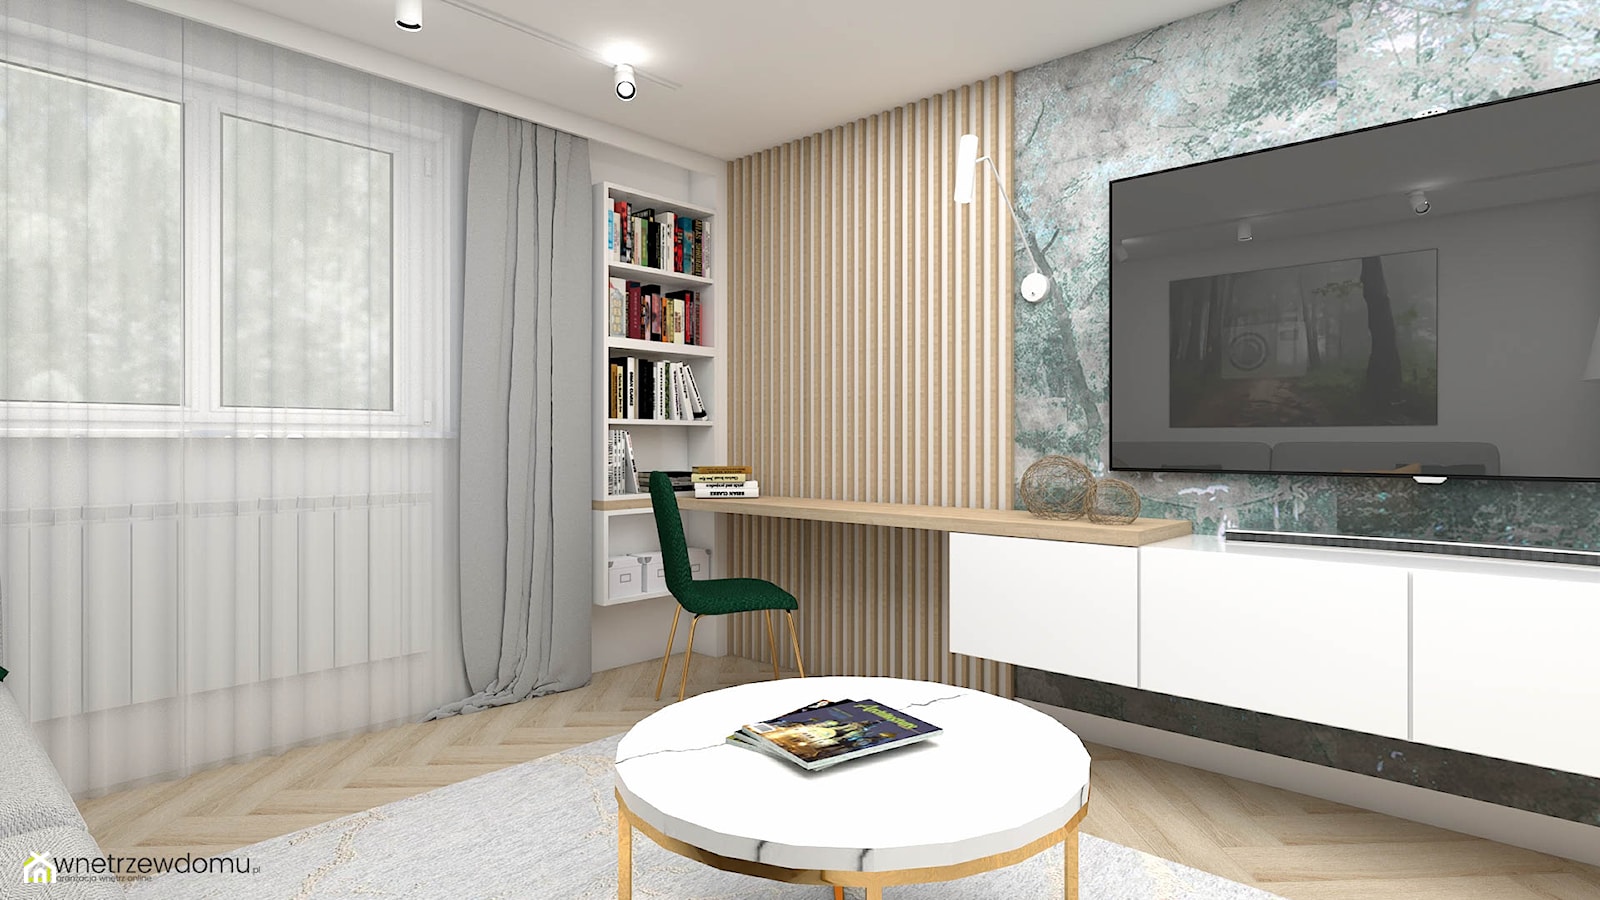 Niewielki salon z ozdobną tapetą - zdjęcie od wnetrzewdomu - Homebook